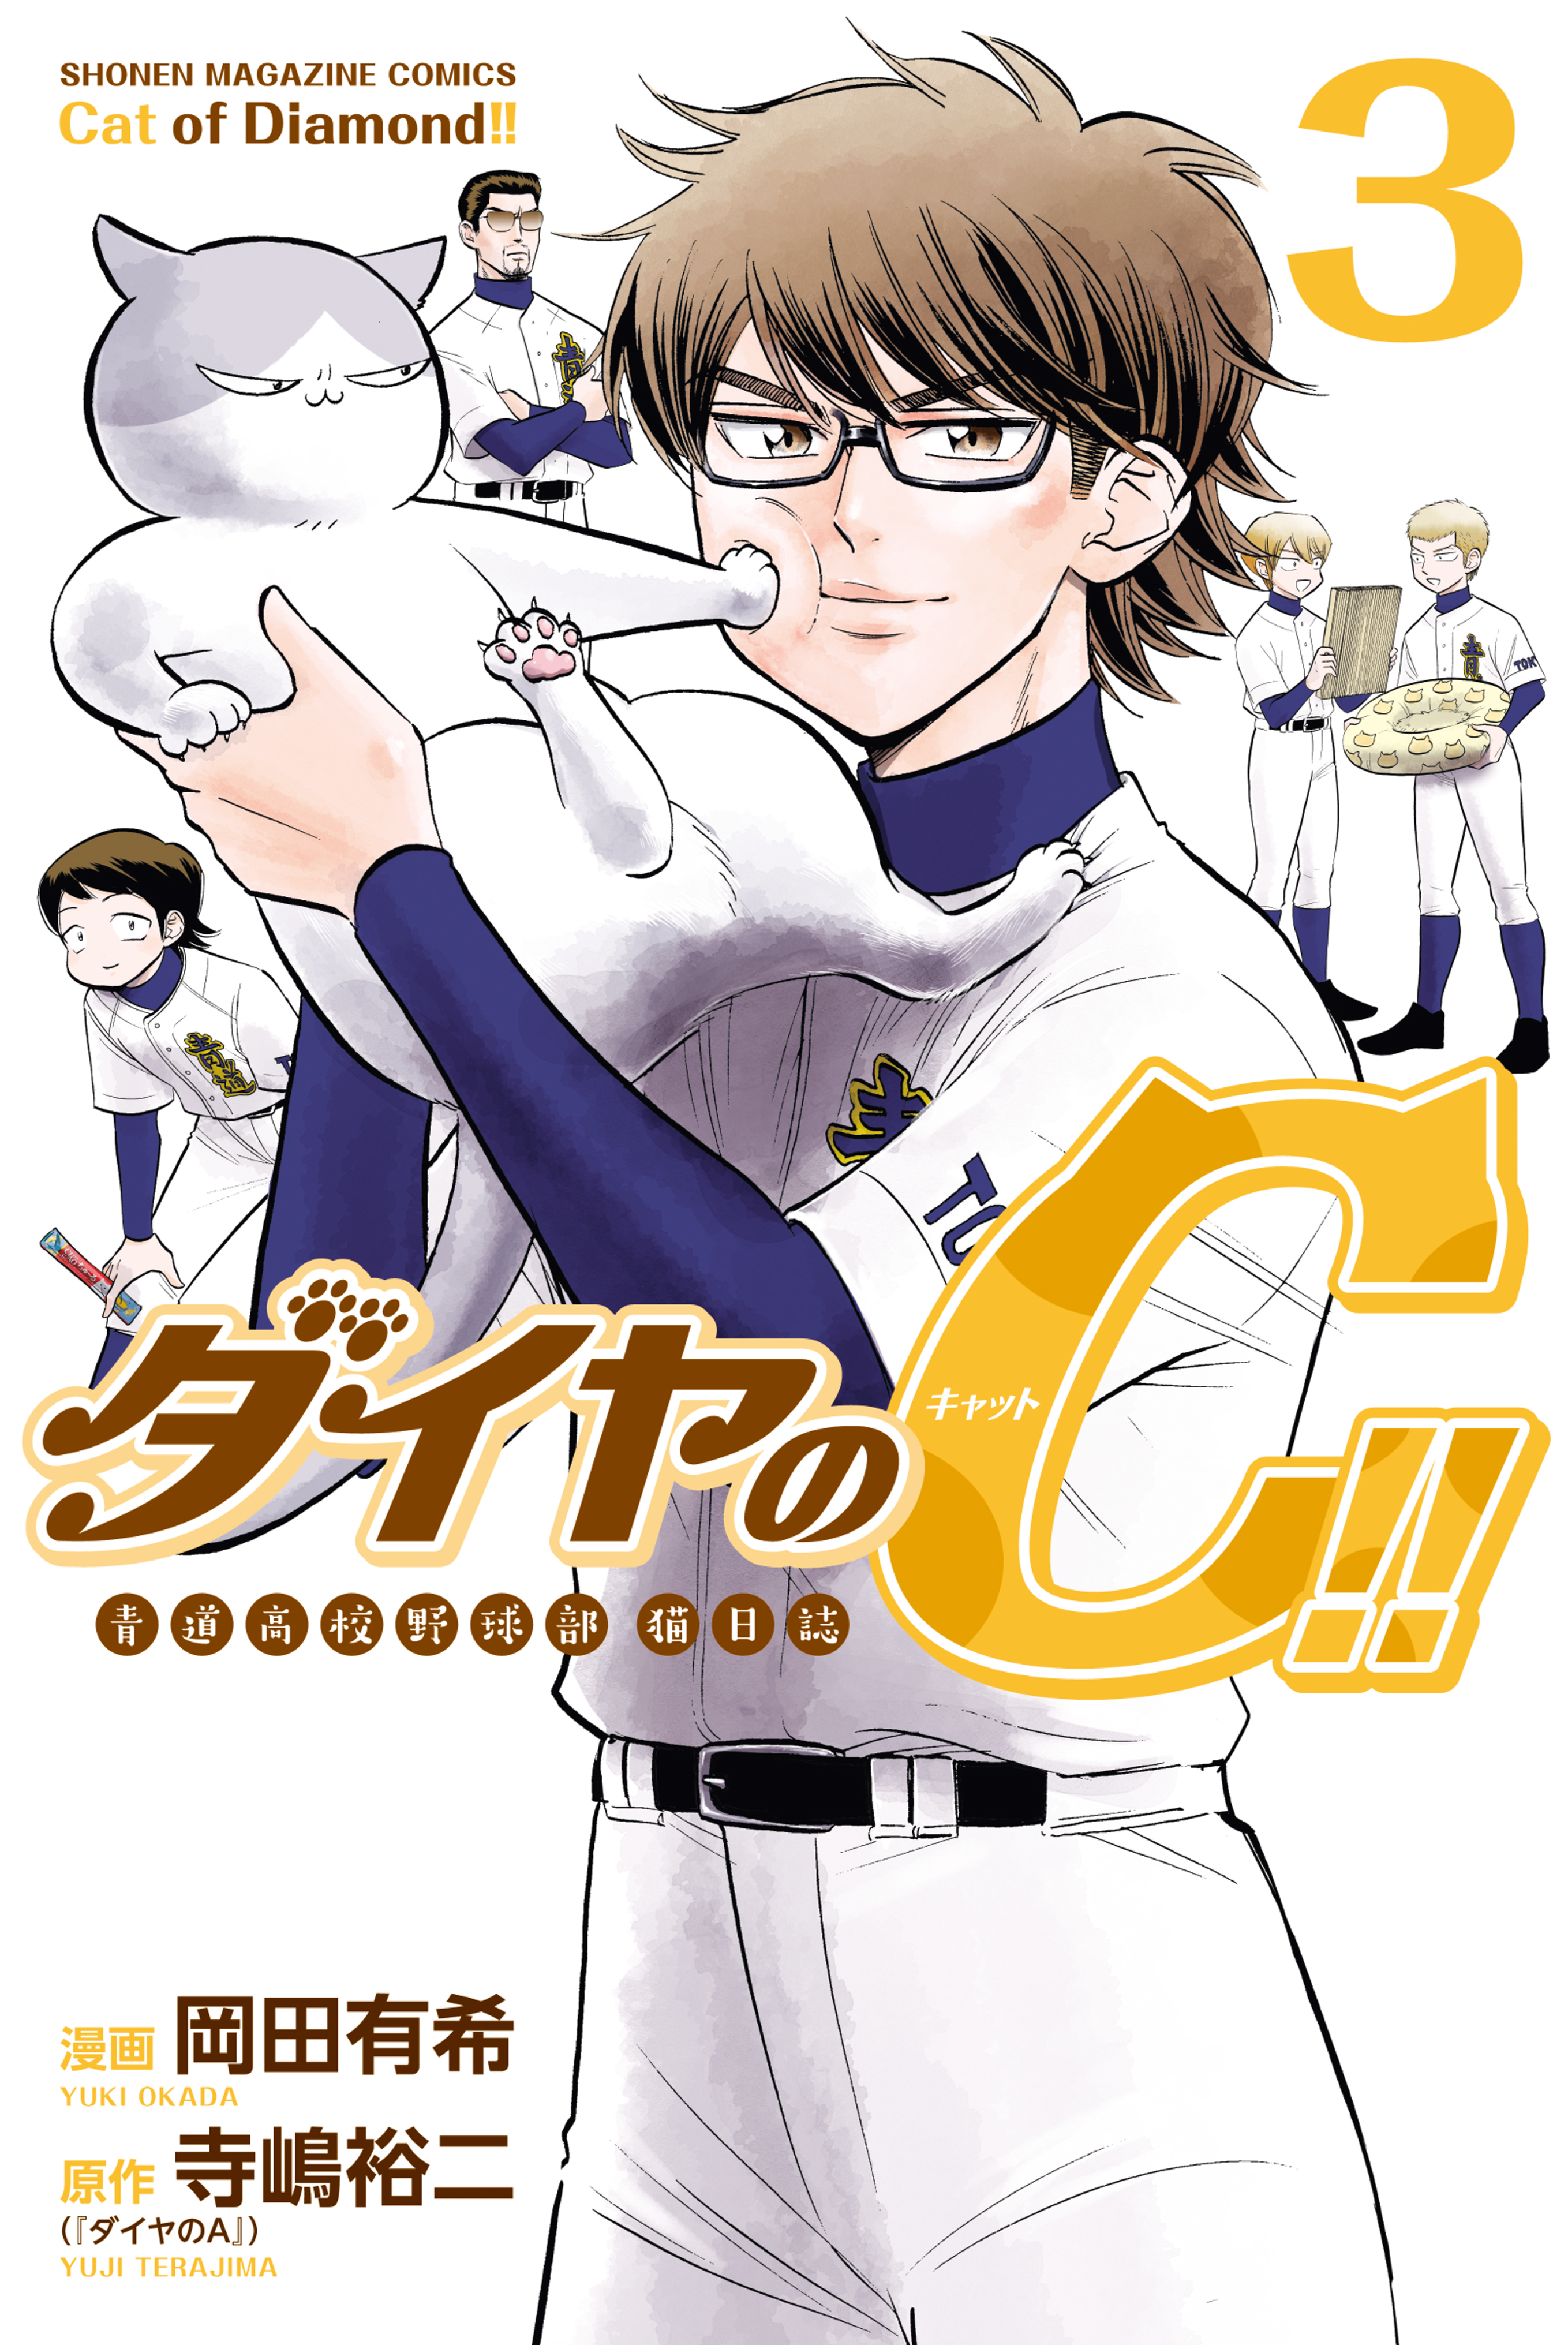 Ace of Diamond act Ⅱ Vol.3 manga Japanese version